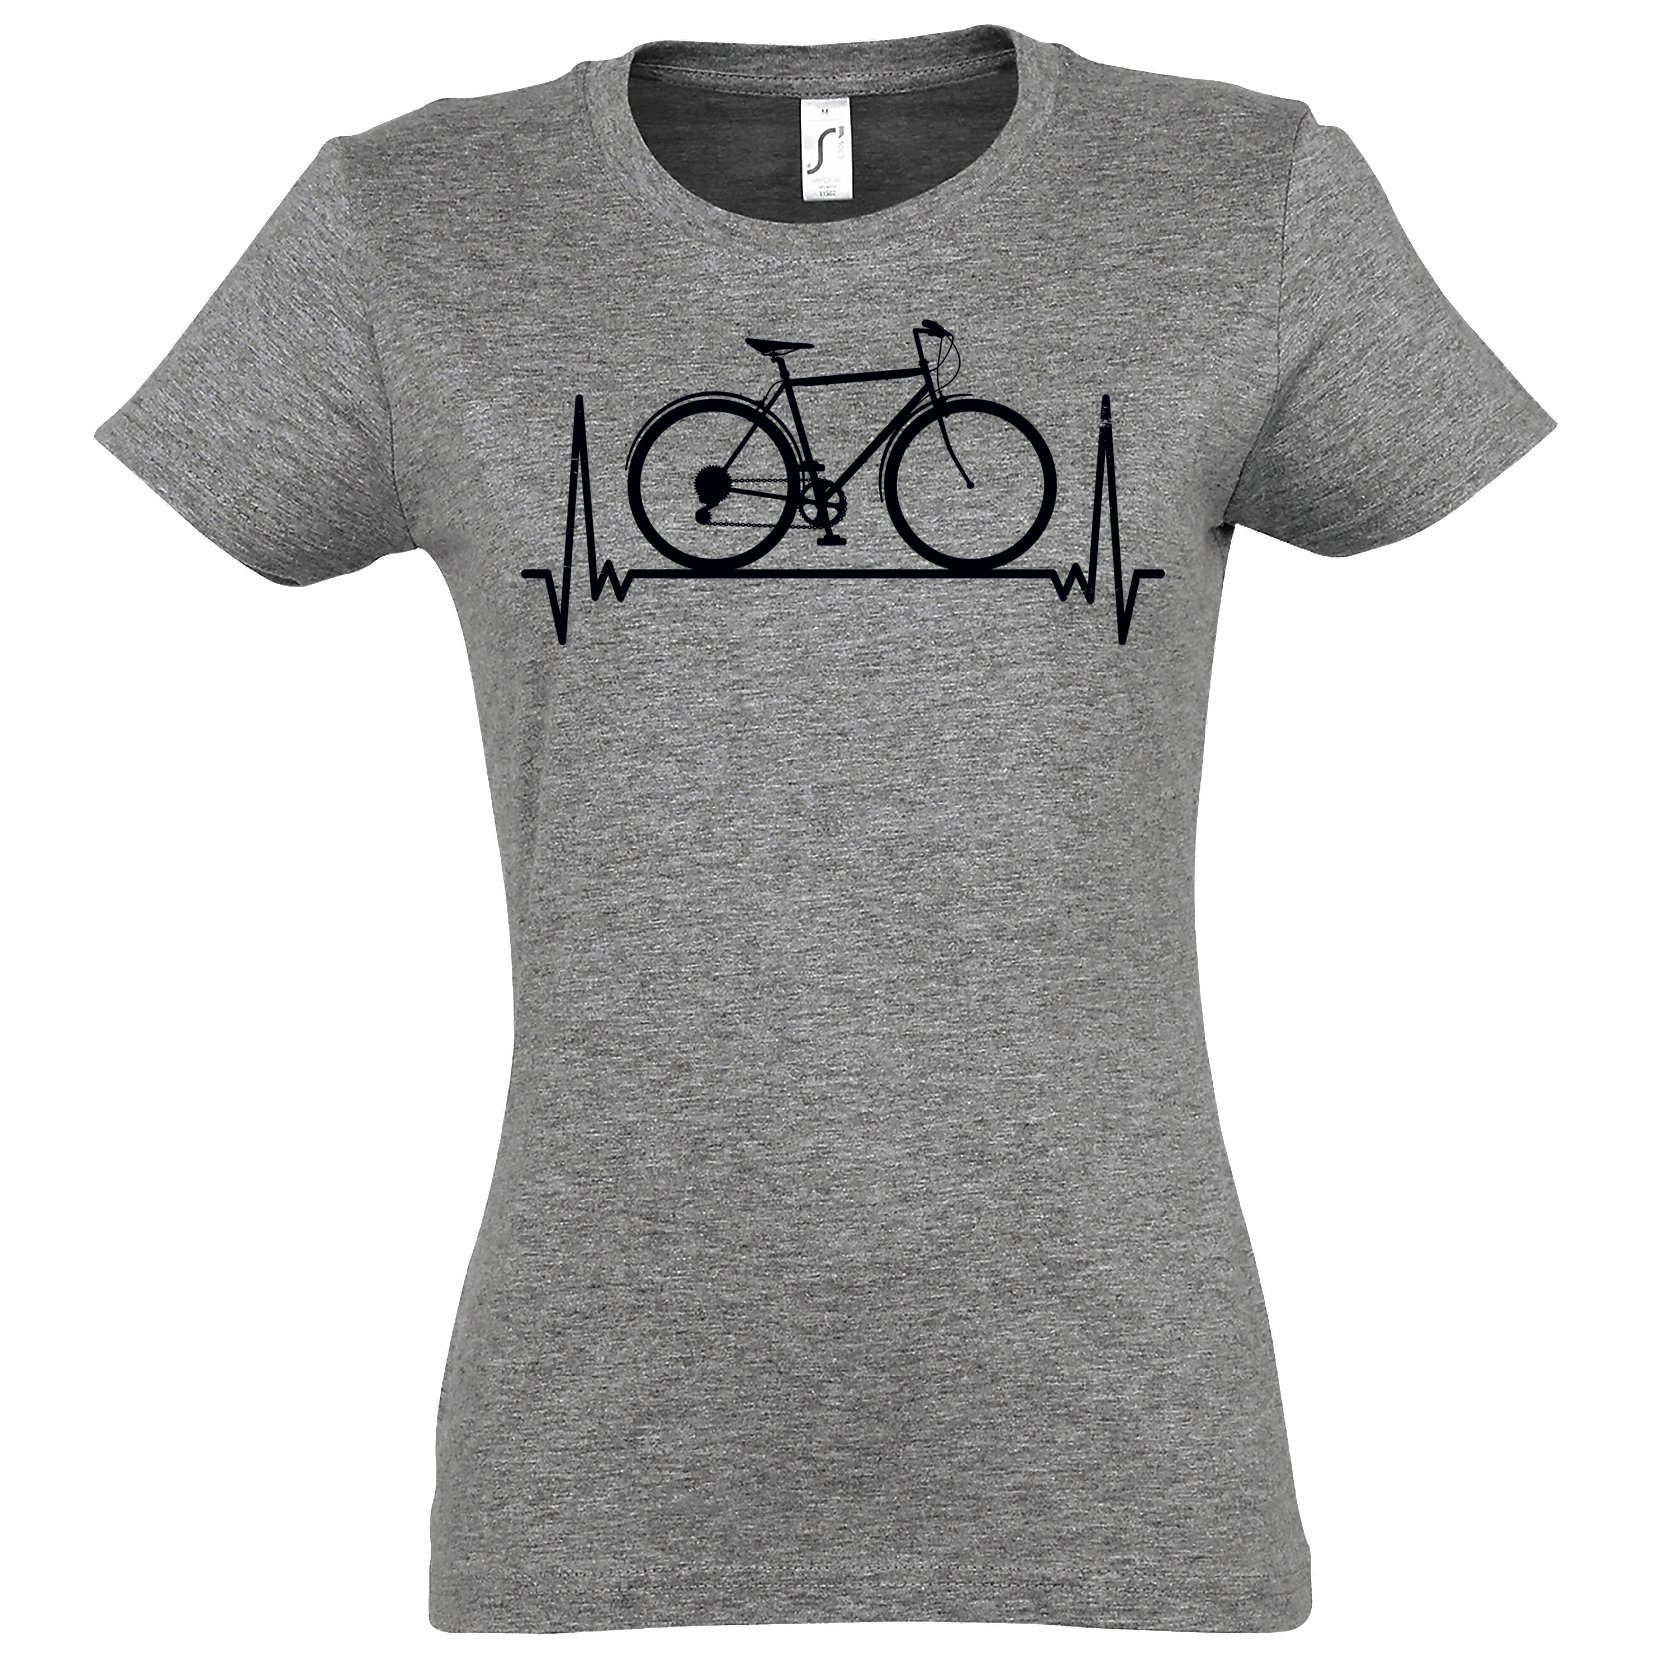 T-Shirt mit Heartbeat Frontprint Designz Youth Shirt Damen Fahrrad Grau trendigem